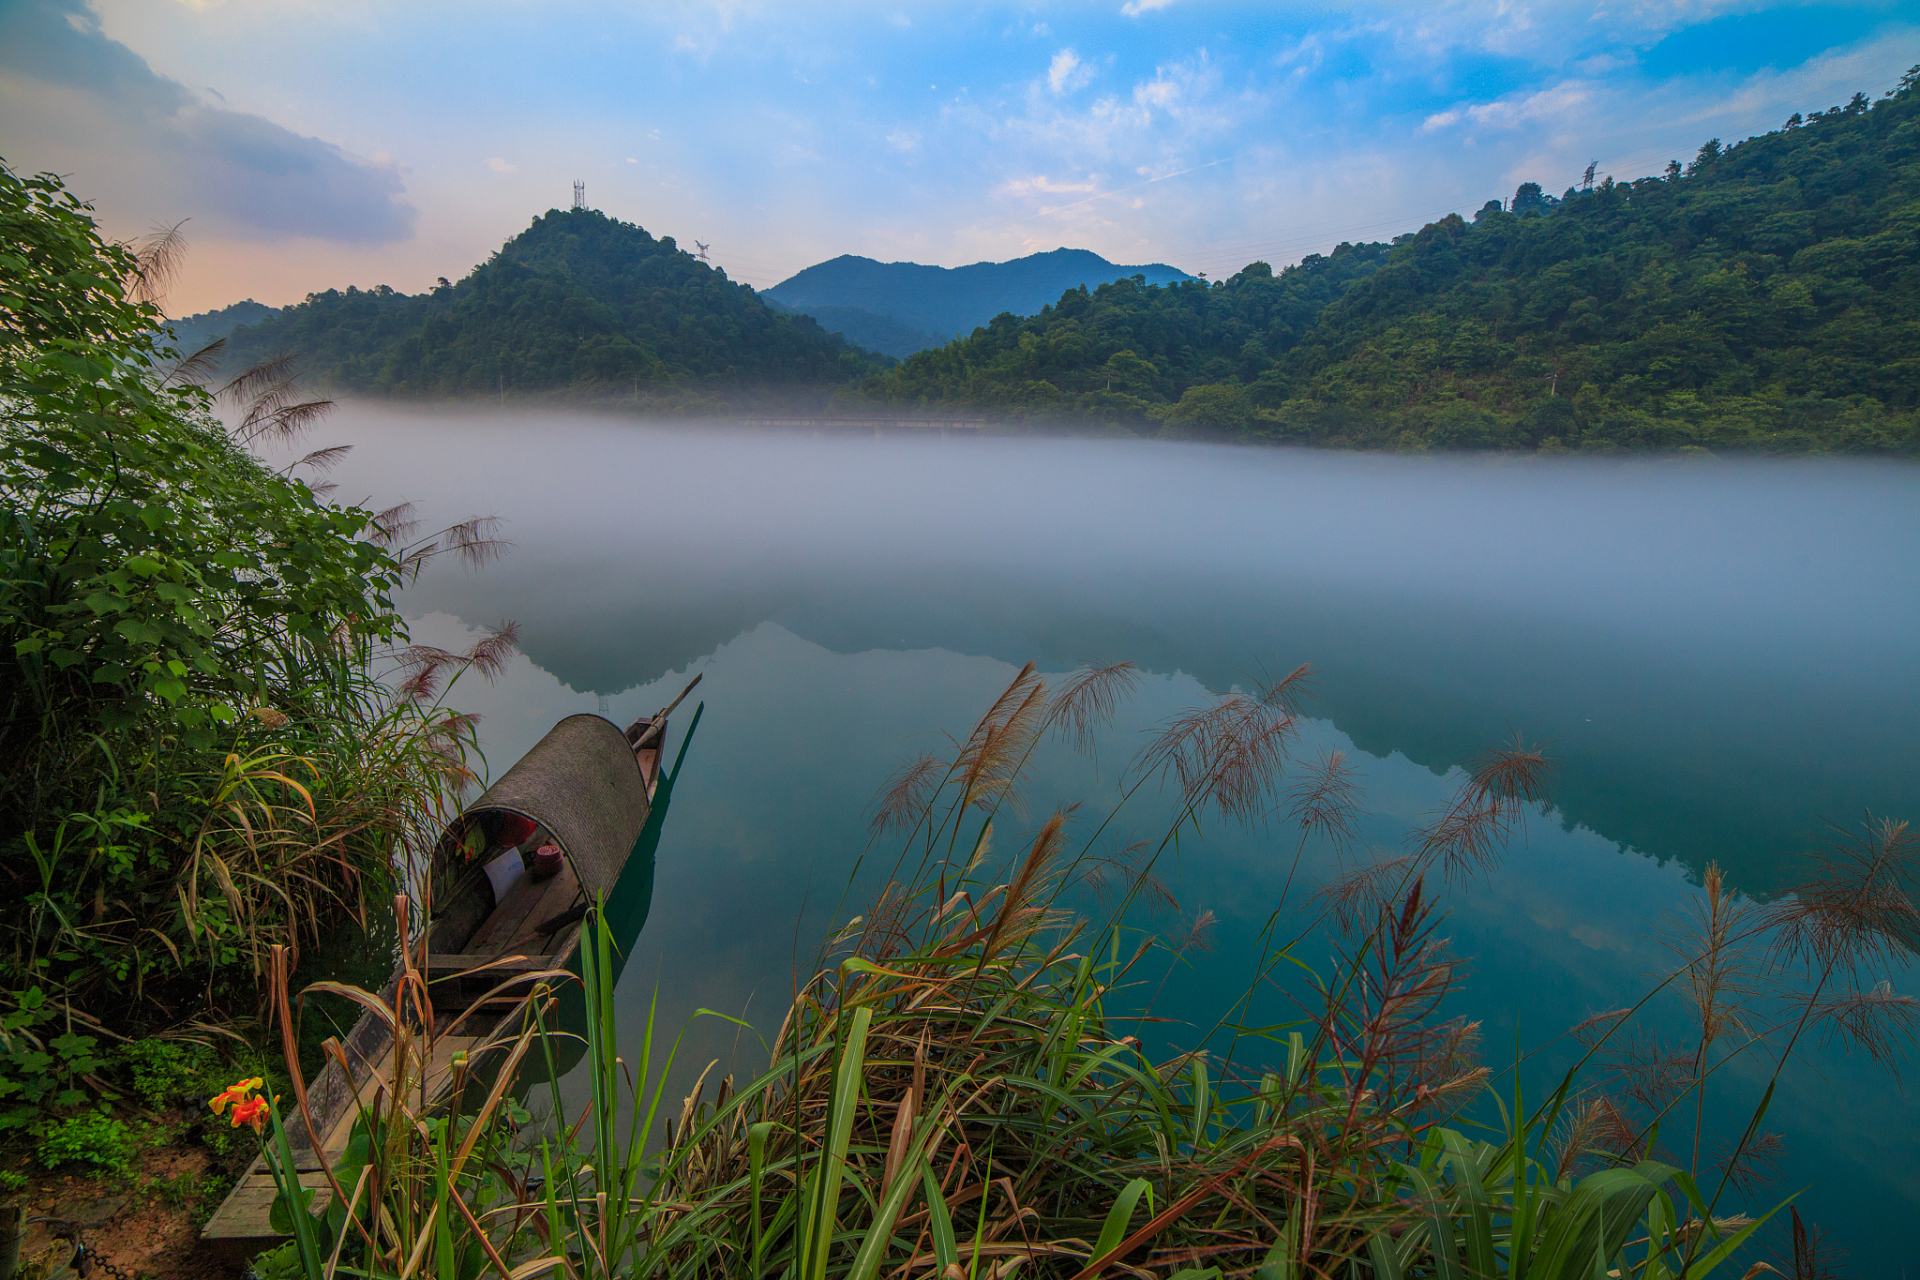 东江湖风景旅游区  这处风景自然景观和人文景观非常完美的融合在了一